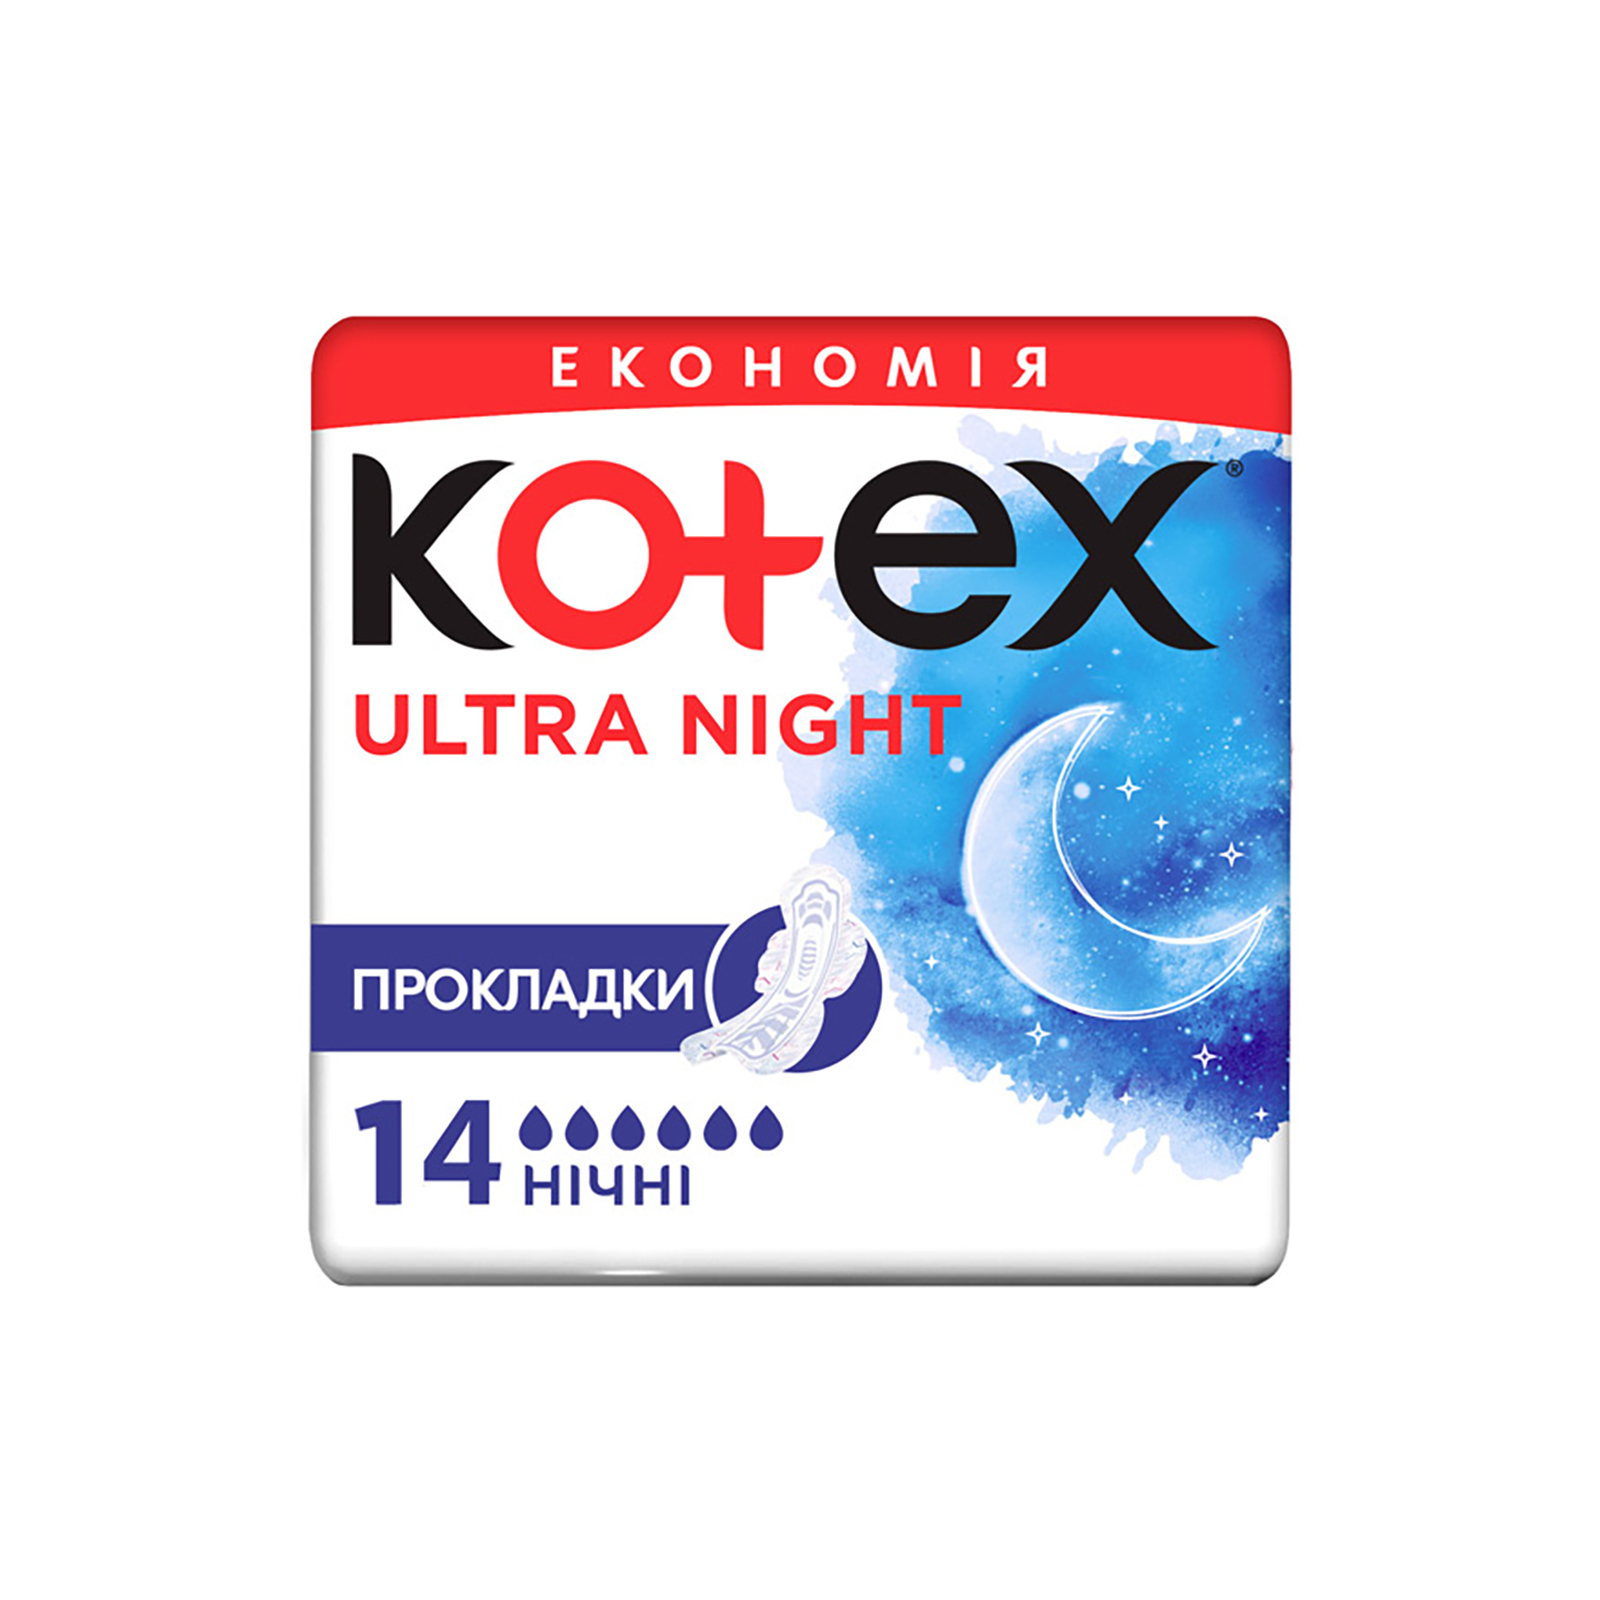 Гигиенические прокладки Kotex Ultra Night 7 шт. (5029053540108)